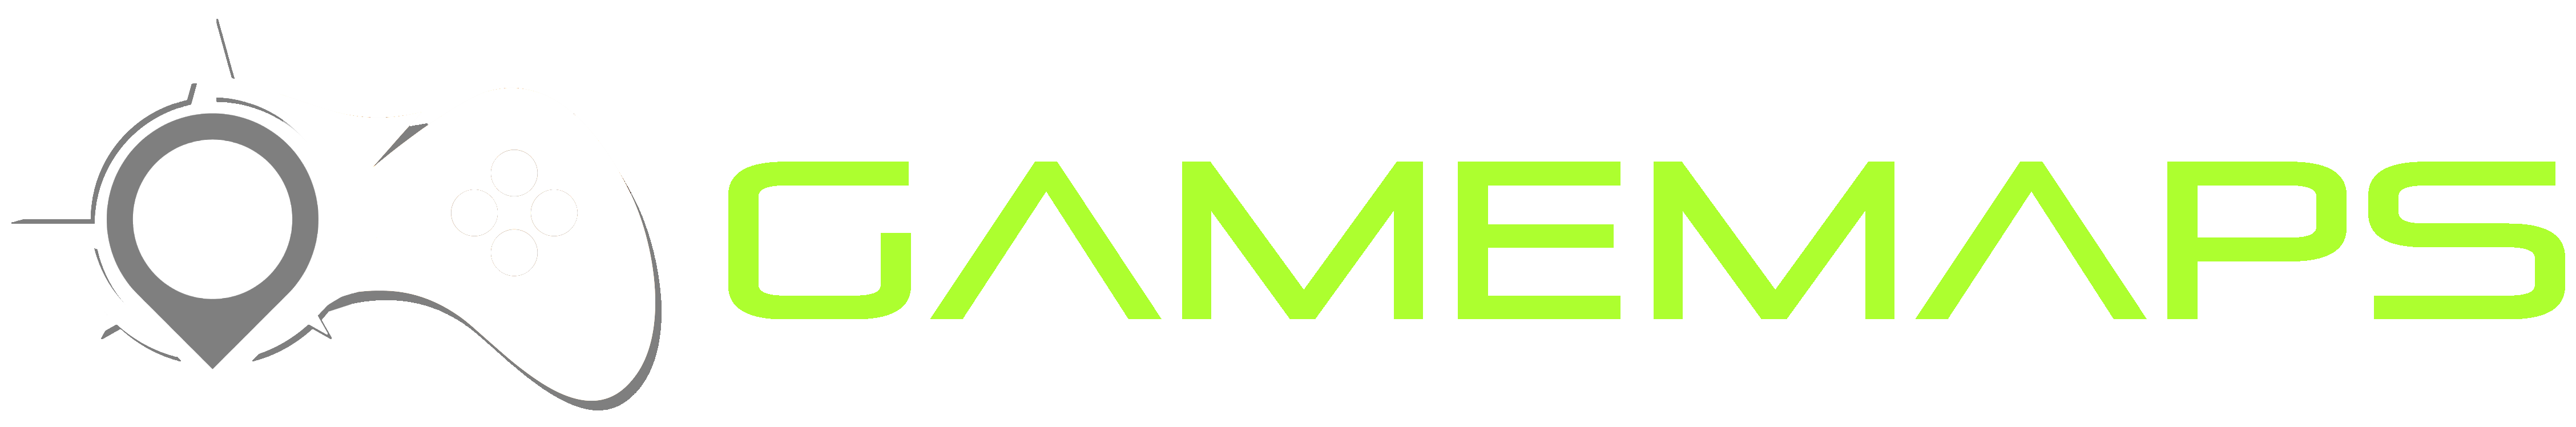 Game Maps Logo